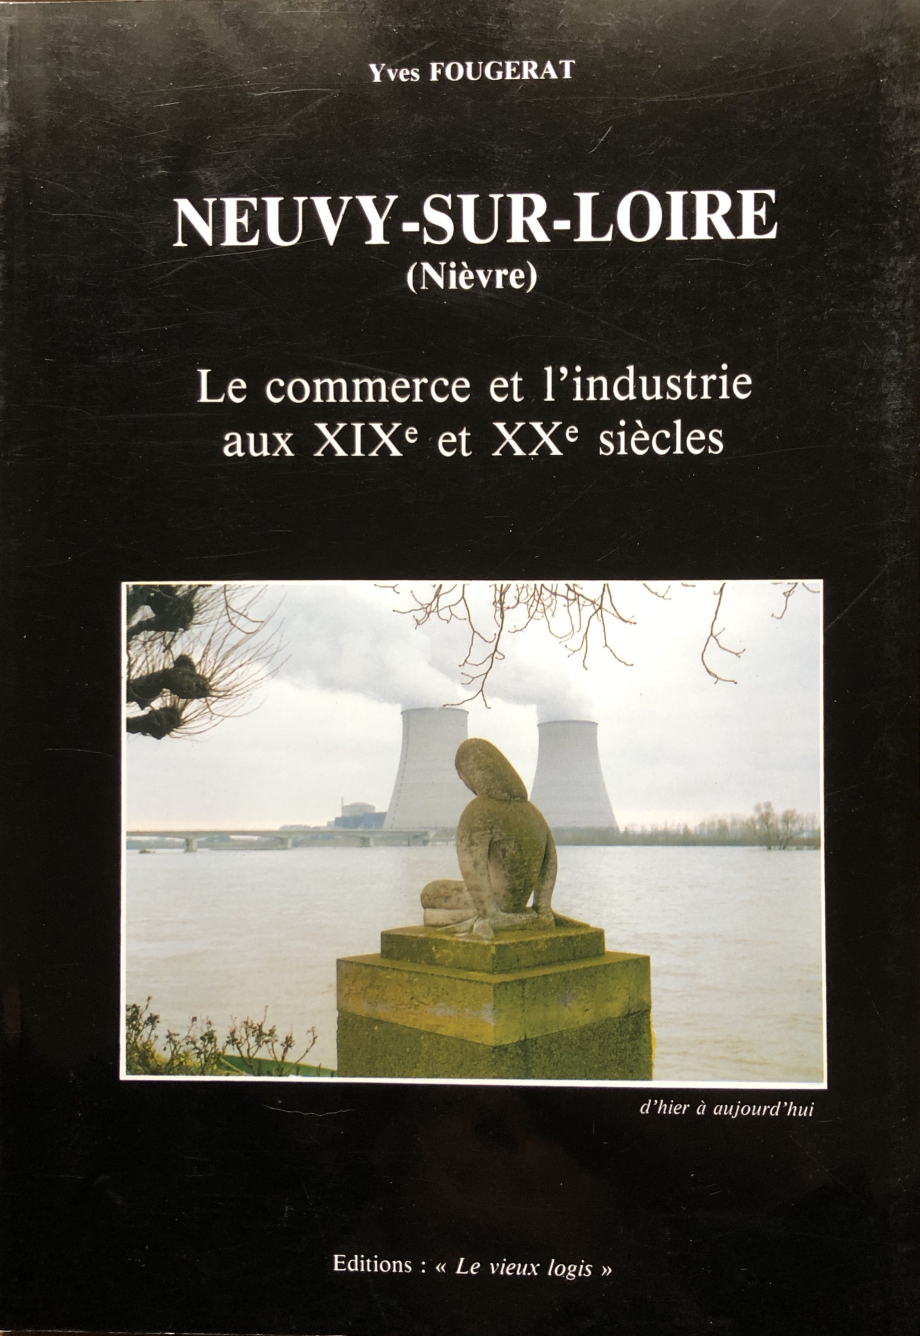 Neuvy sur Loire le commerce et industrie IMG_3042